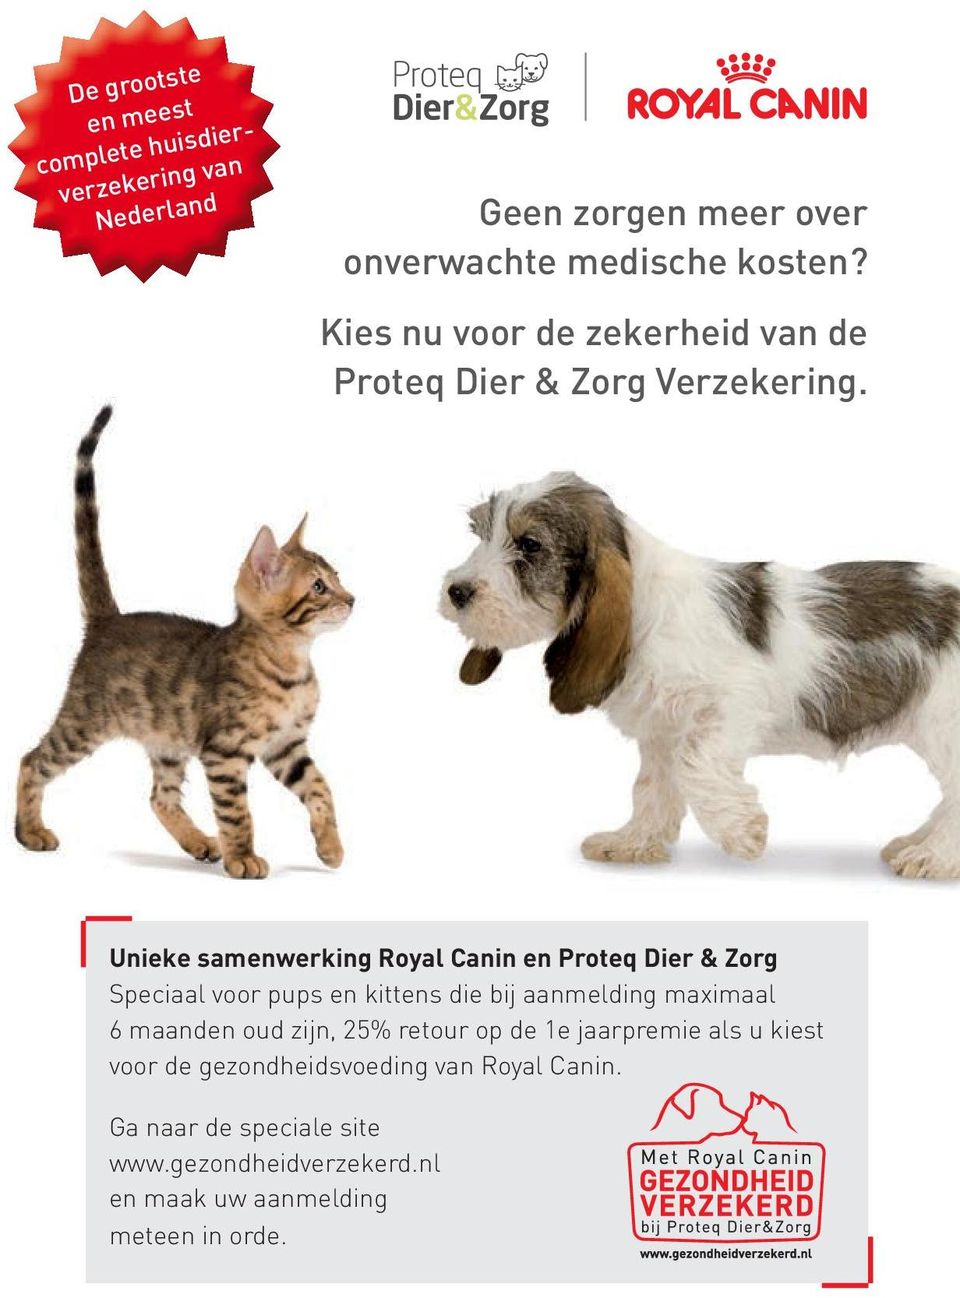 Unieke samenwerking Royal Canin en Proteq Dier & Zorg Speciaal voor pups en kittens die bij aanmelding maximaal 6 maanden